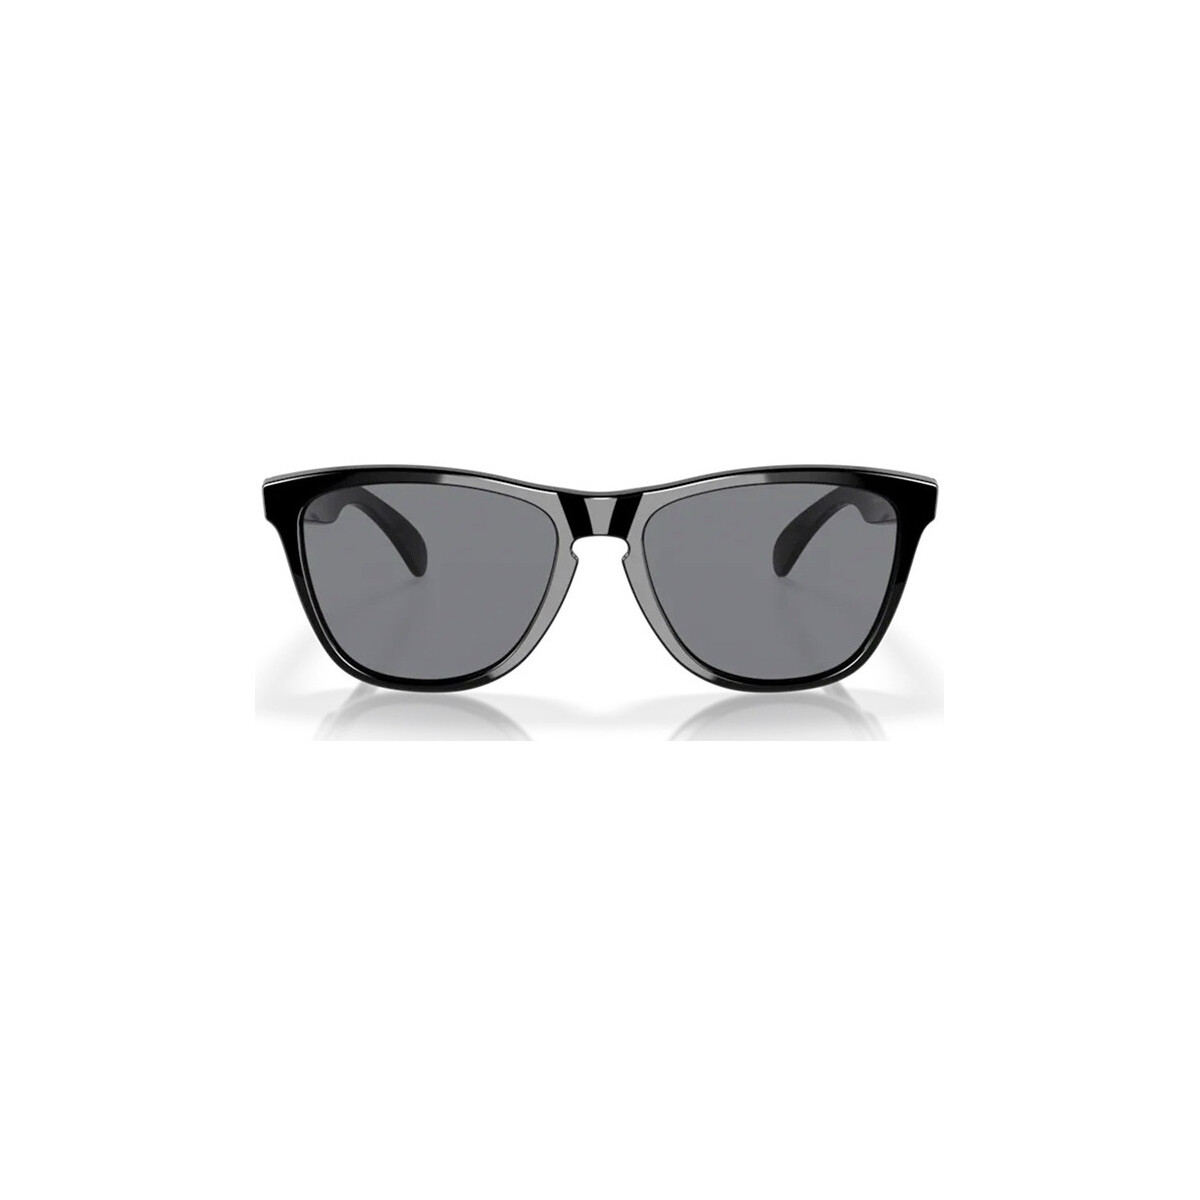 Orologi & Gioielli Occhiali da sole Oakley OO9013 FROGSKINS Occhiali da sole, Nero/Grigio, 55 mm Nero